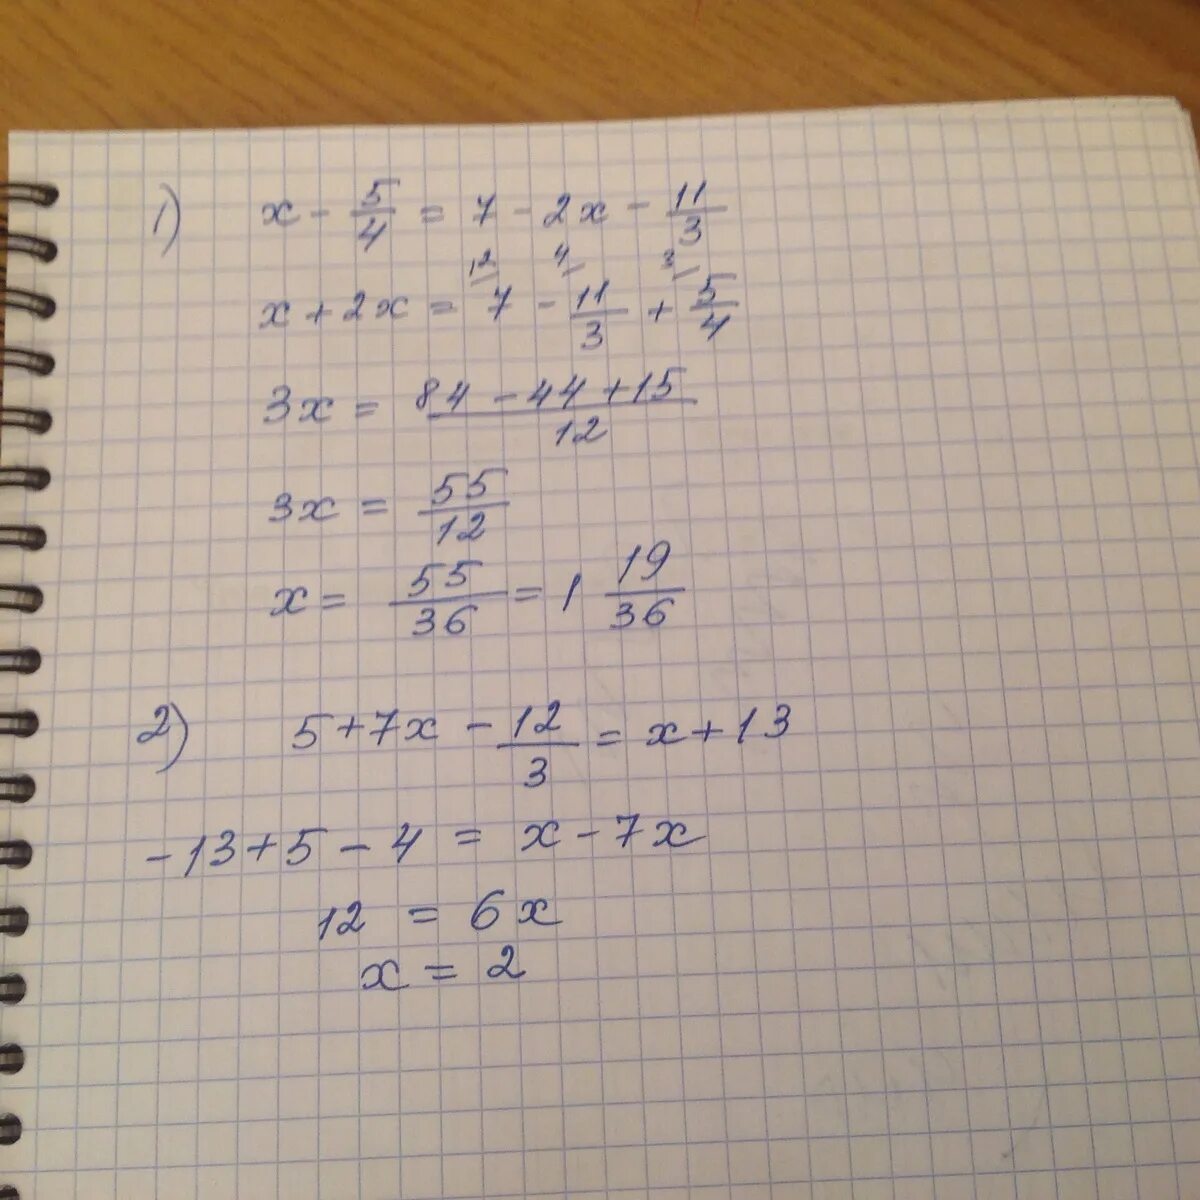 2x 3 2 2x 5 2. 3x^2+11x+5<x^2. 5x-12=2x+3. X2 - 13x + 12 = 0. 5x^3-7x/1-2x^3.